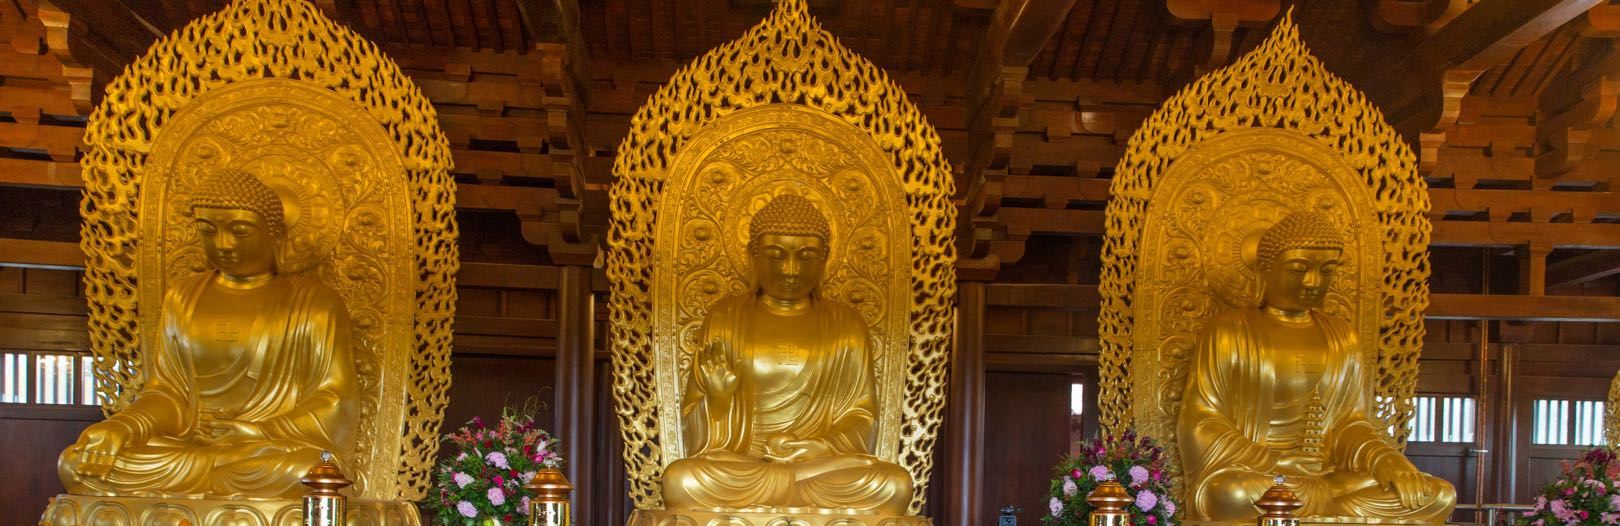 3 Buddha in Main Hall